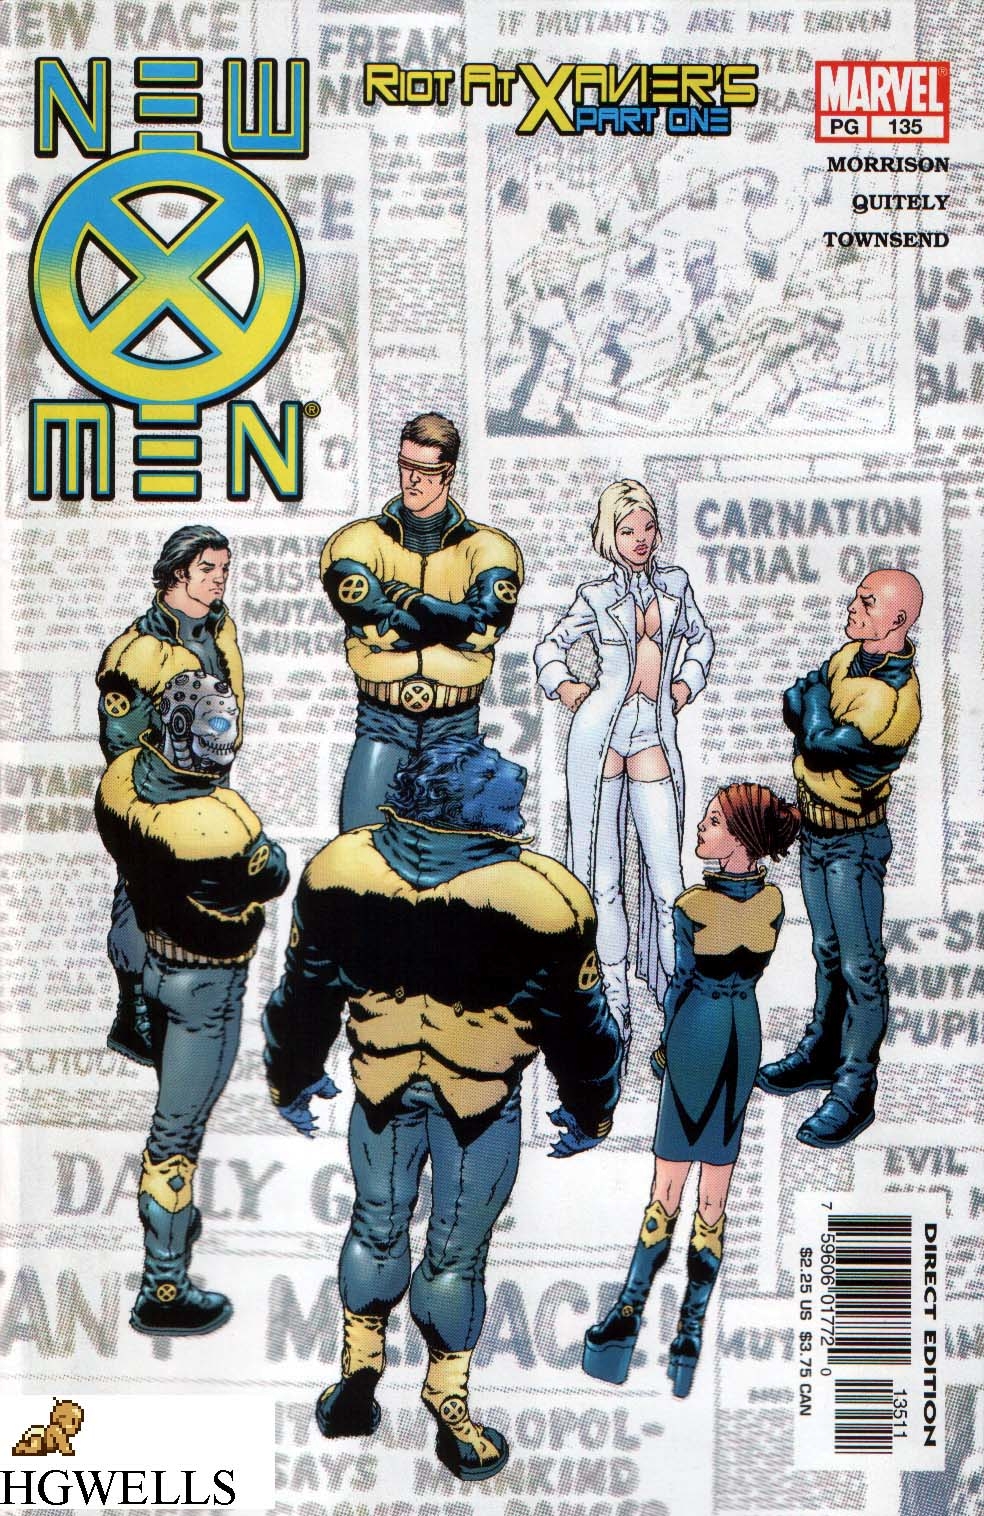 High Resolution Wallpaper | New X-Men 984x1516 px